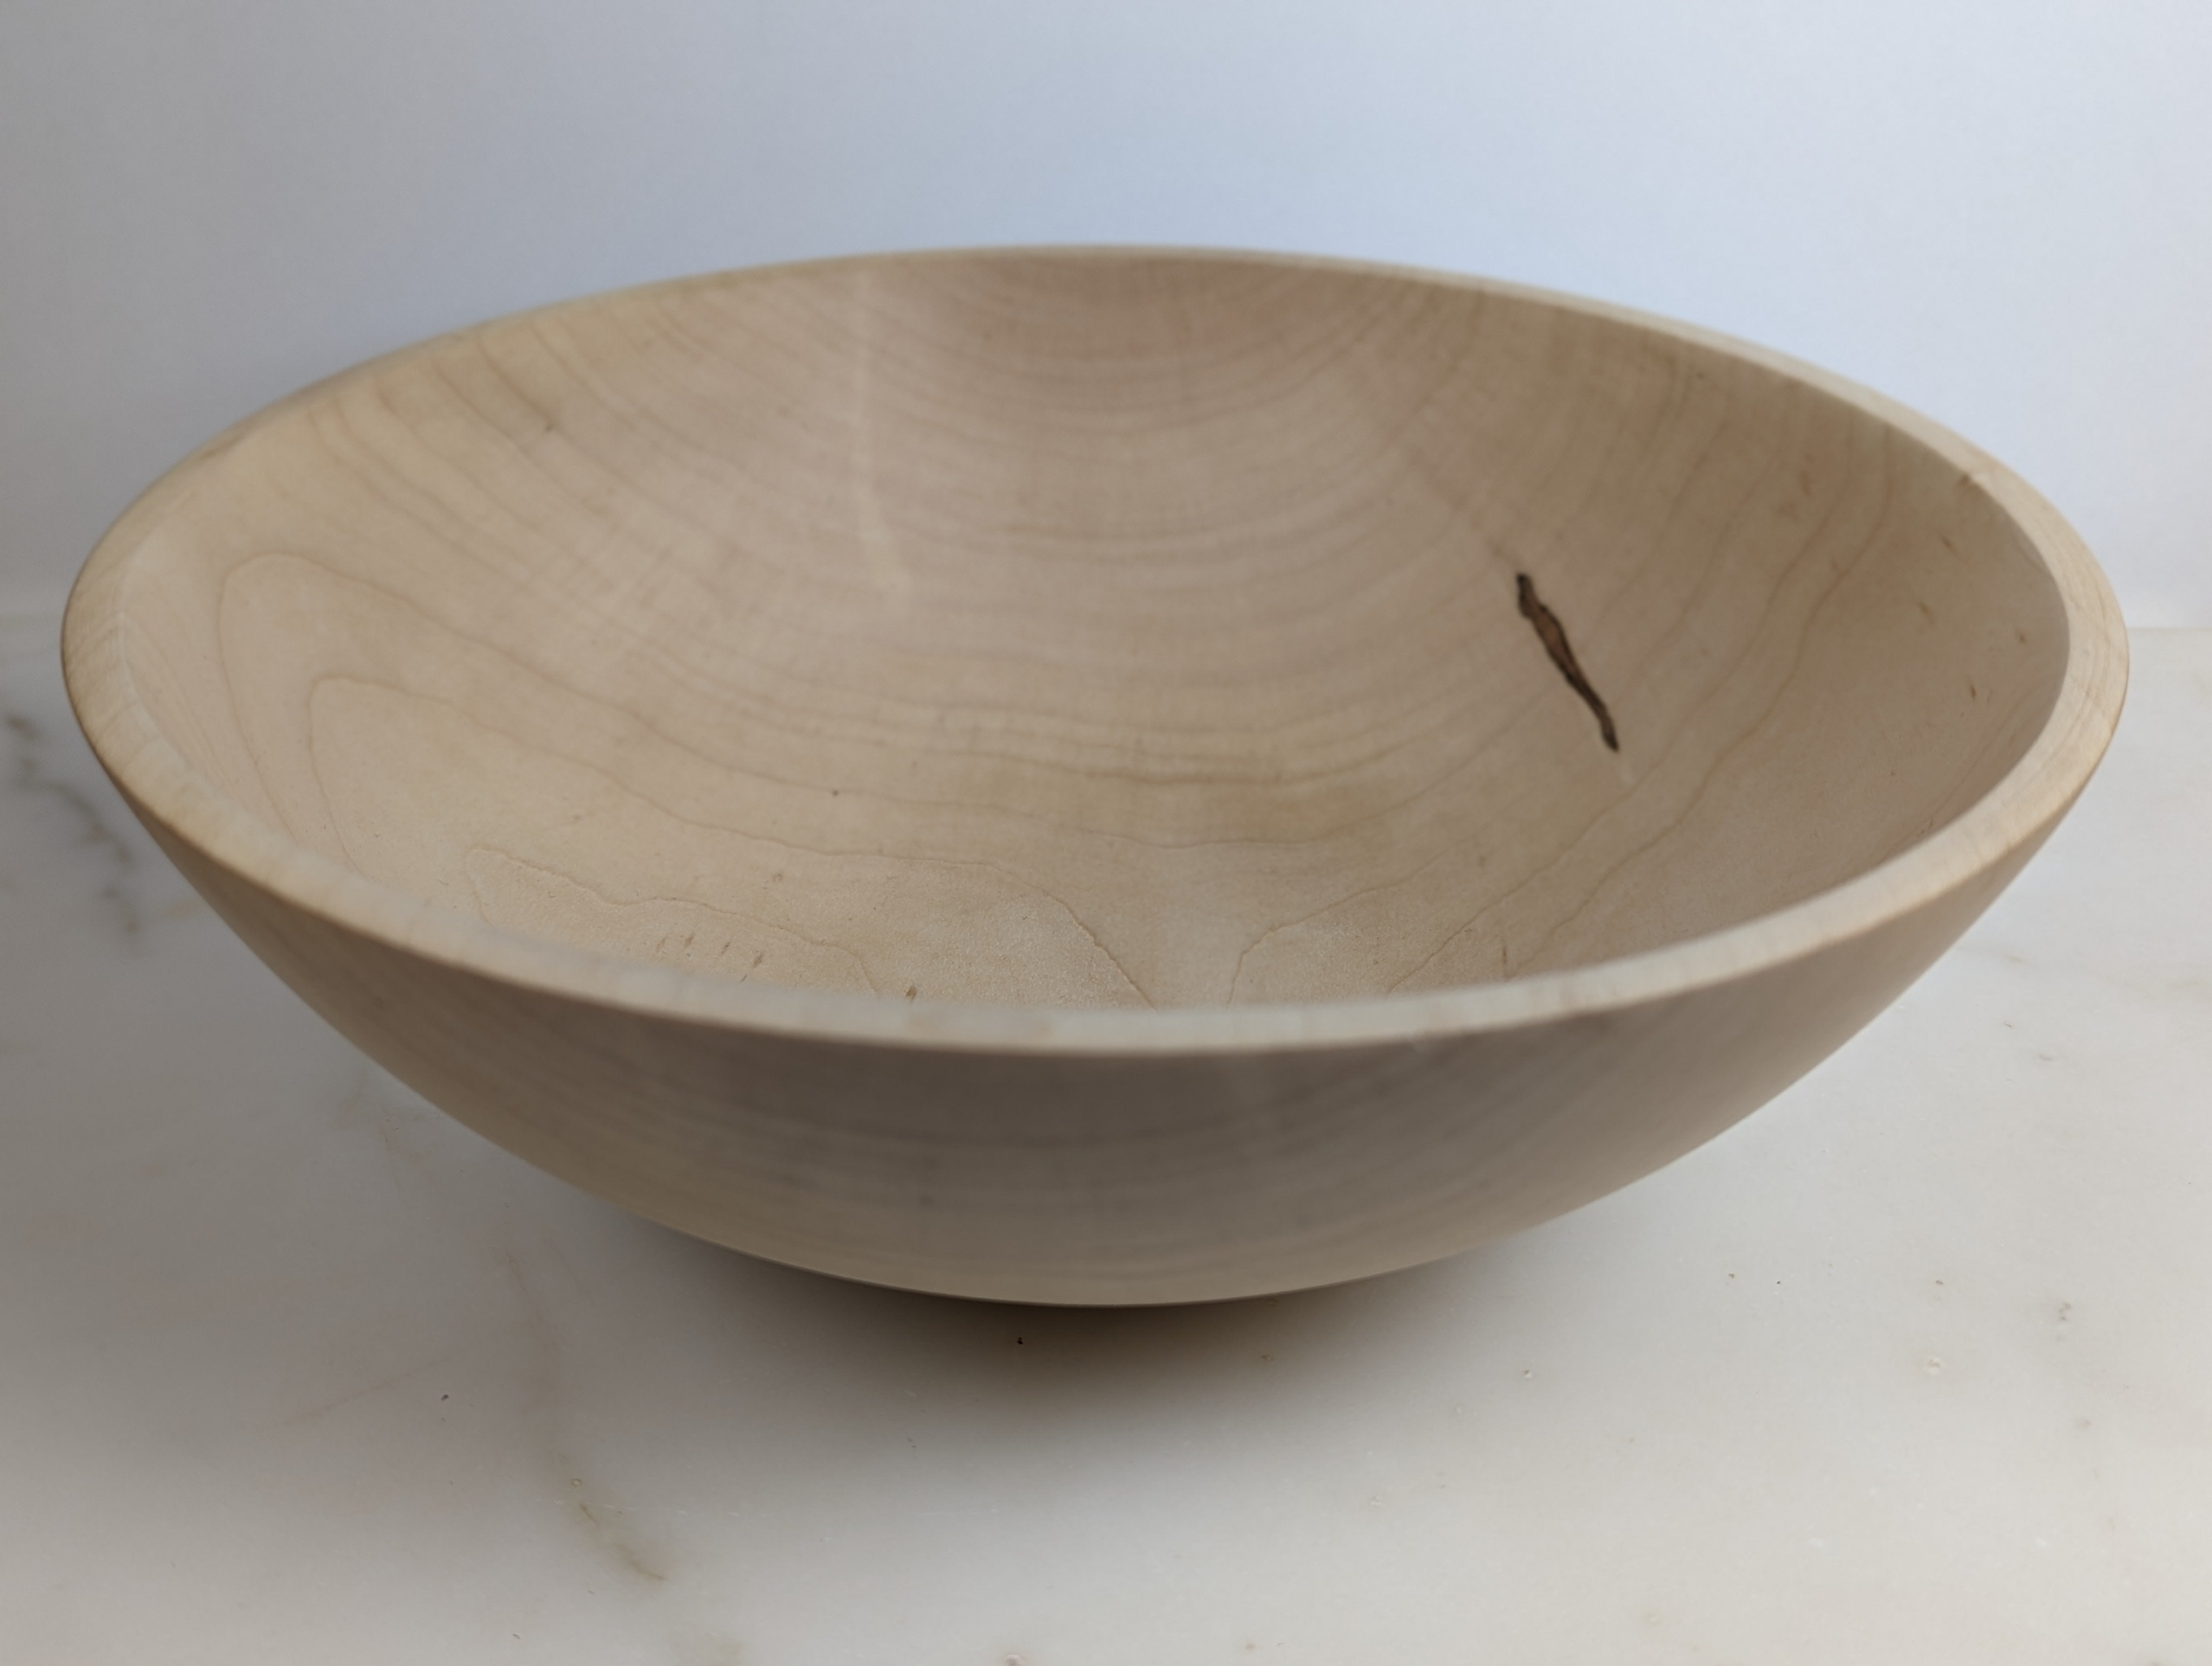 Basic maple bowl